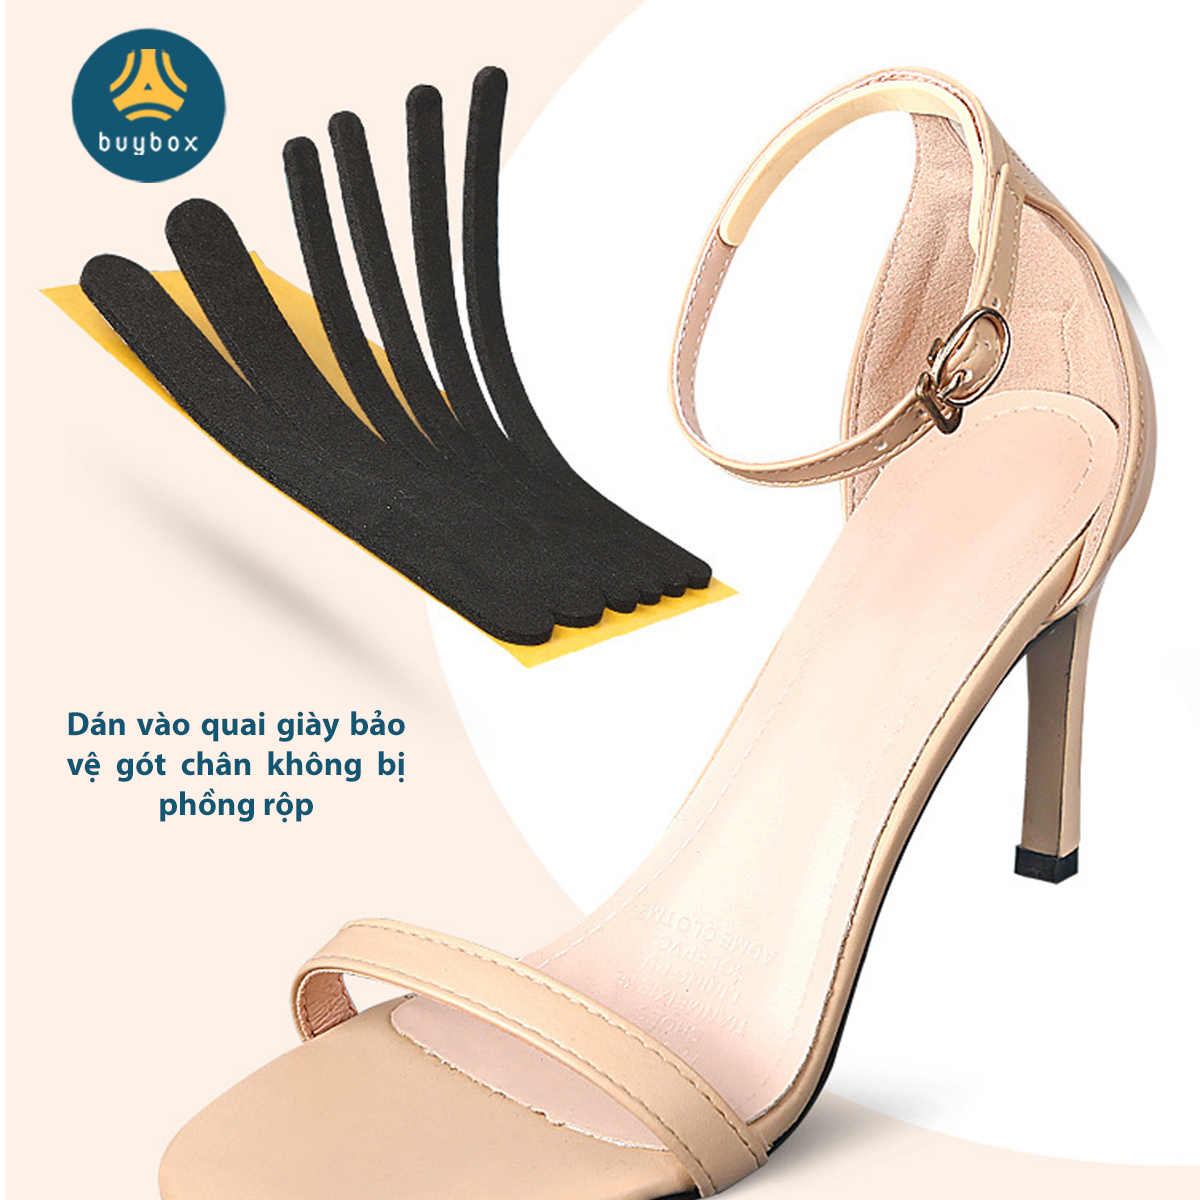 Combo 5 Miếng dán chống trầy gót chuyên dùng cho sandal, giày cao gót chất liệu EVA, silicone cao cấp - Buybox - BBPK282